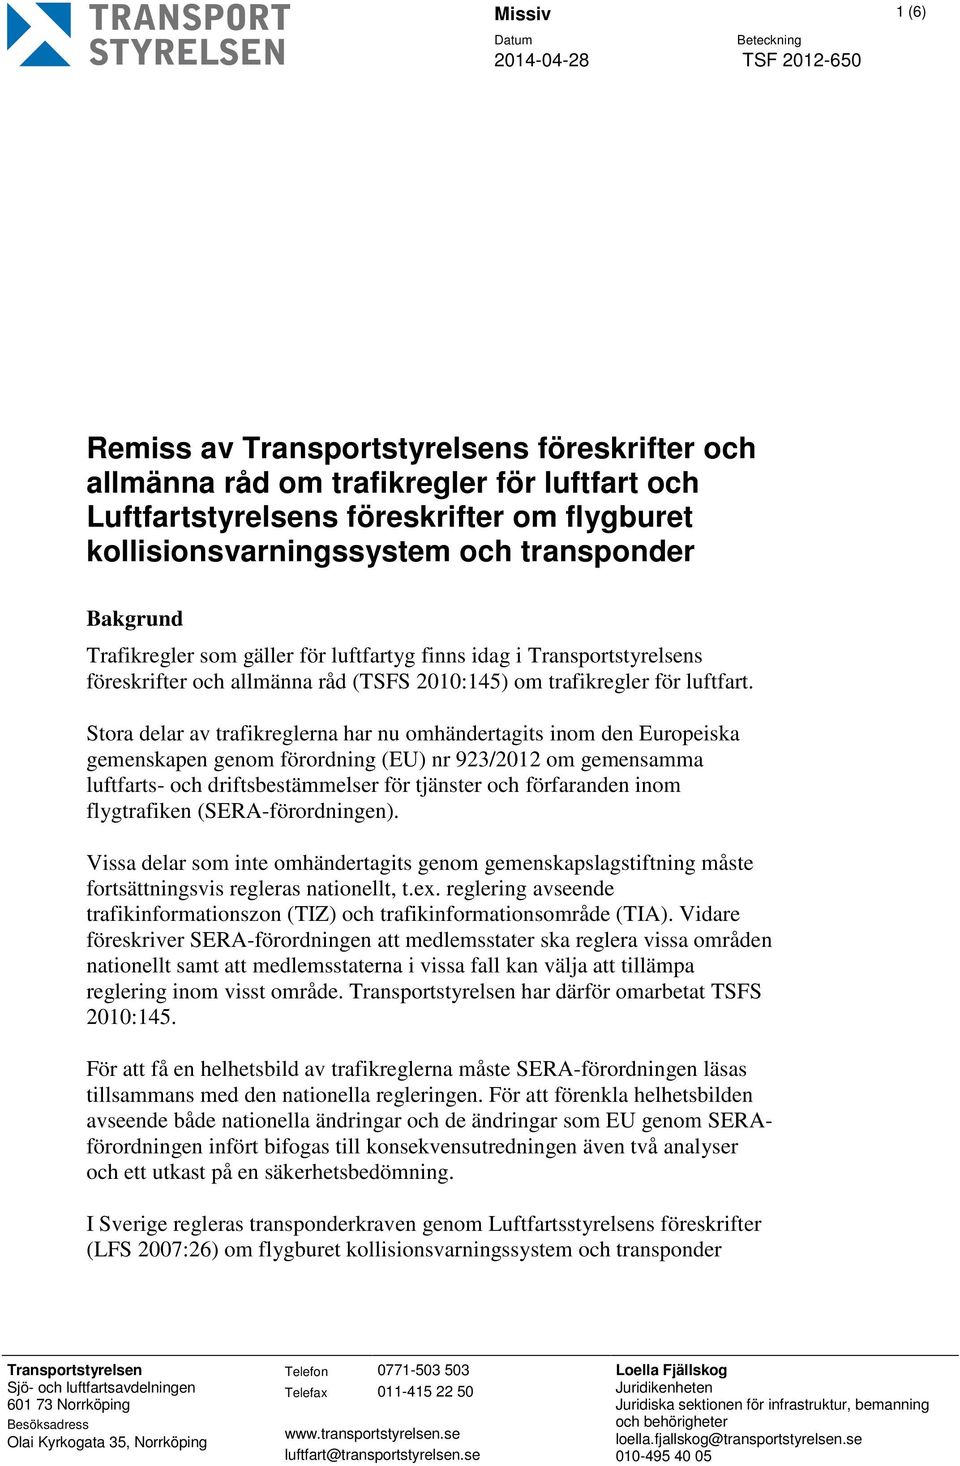 Stora delar av trafikreglerna har nu omhändertagits inom den Europeiska gemenskapen genom förordning (EU) nr 923/2012 om gemensamma luftfarts- och driftsbestämmelser för tjänster och förfaranden inom